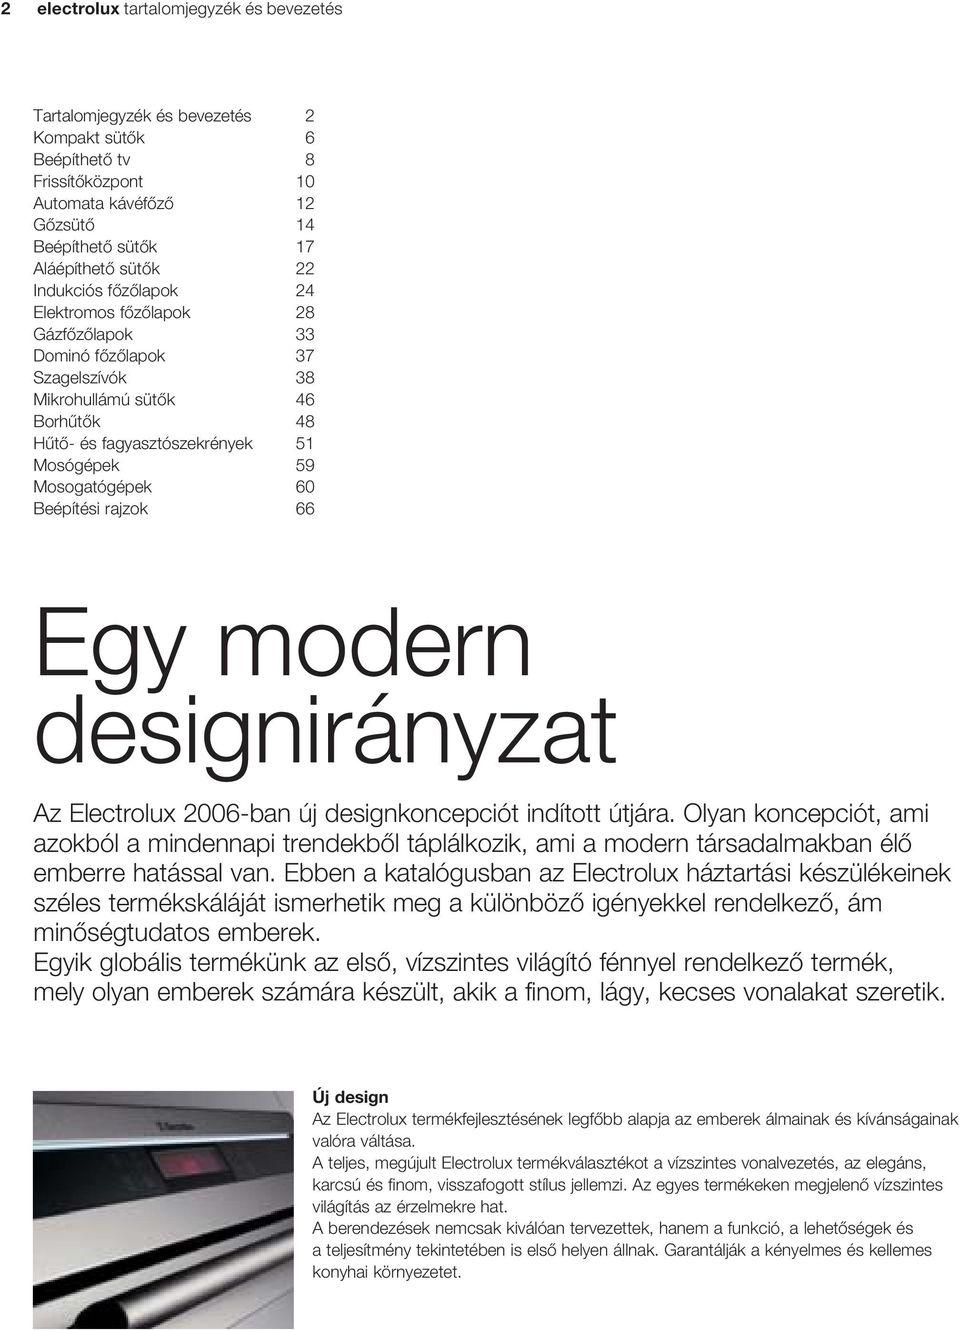 Beépítési rajzok 66 Egy modern designirányzat z Electrolux 2006-ban új designkoncepciót indított útjára.